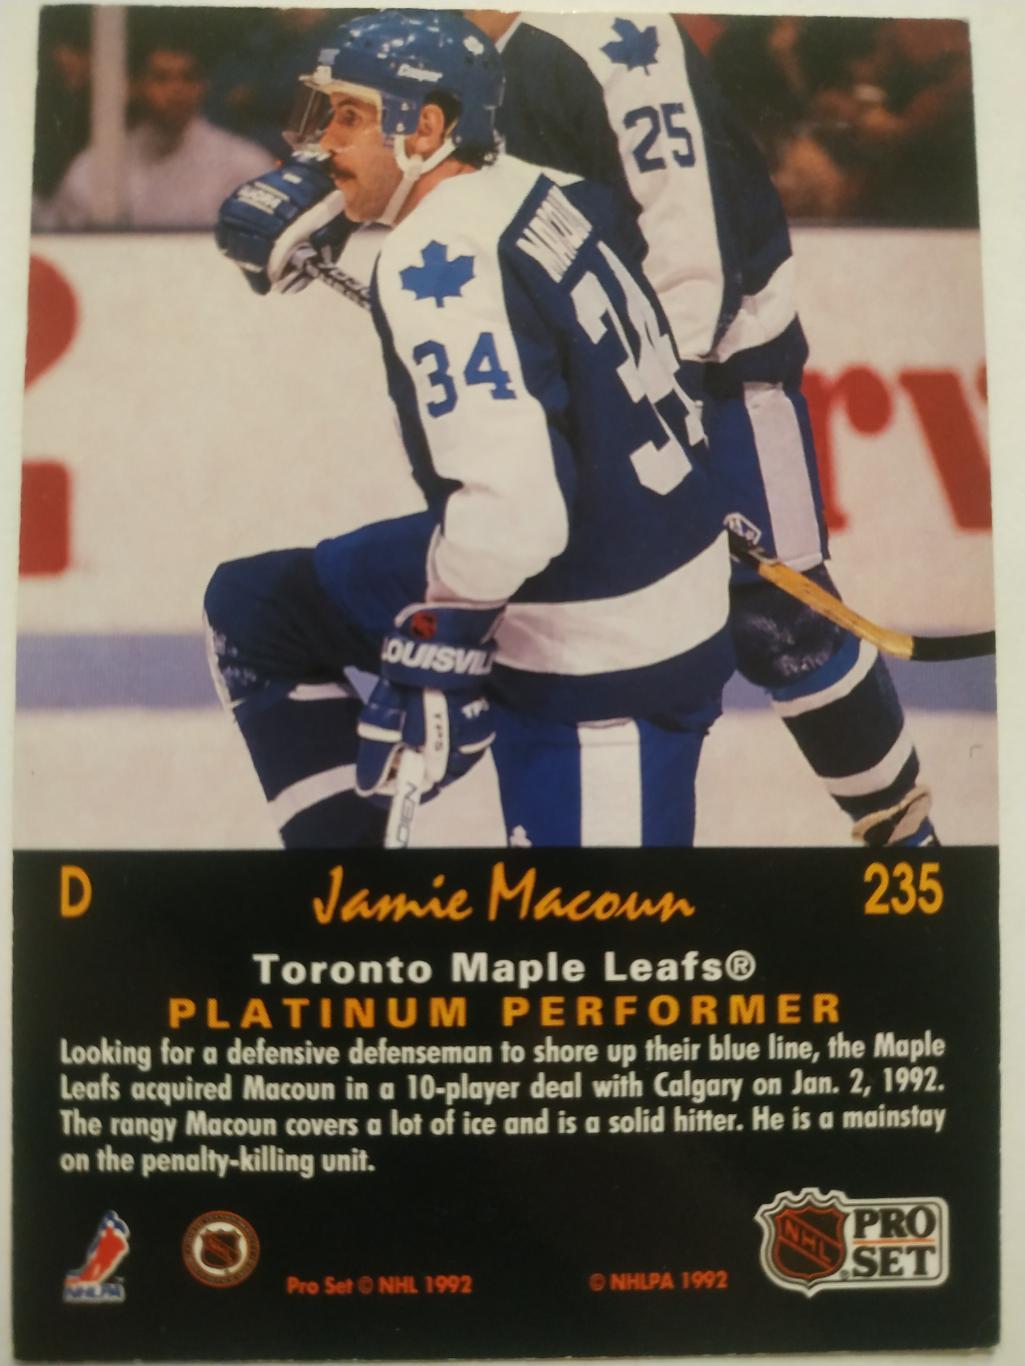 ХОККЕЙ КАРТОЧКА НХЛ PRO SET PLATINUM 1992 NHL JAMIE MACOUN MAPLE LEAFS #235 1